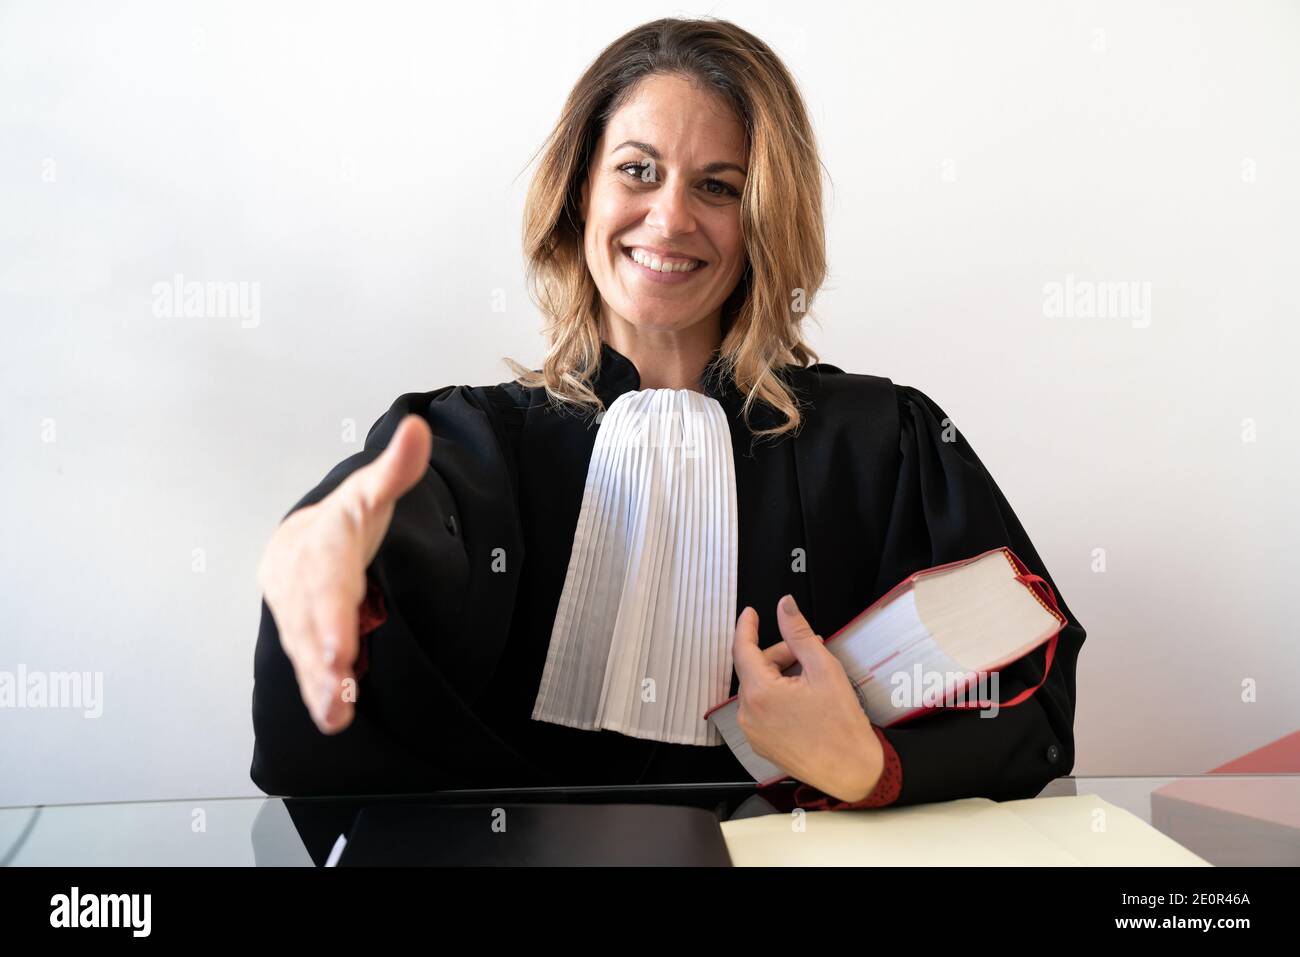 Justice, avocate française, se fait un sourire Banque D'Images